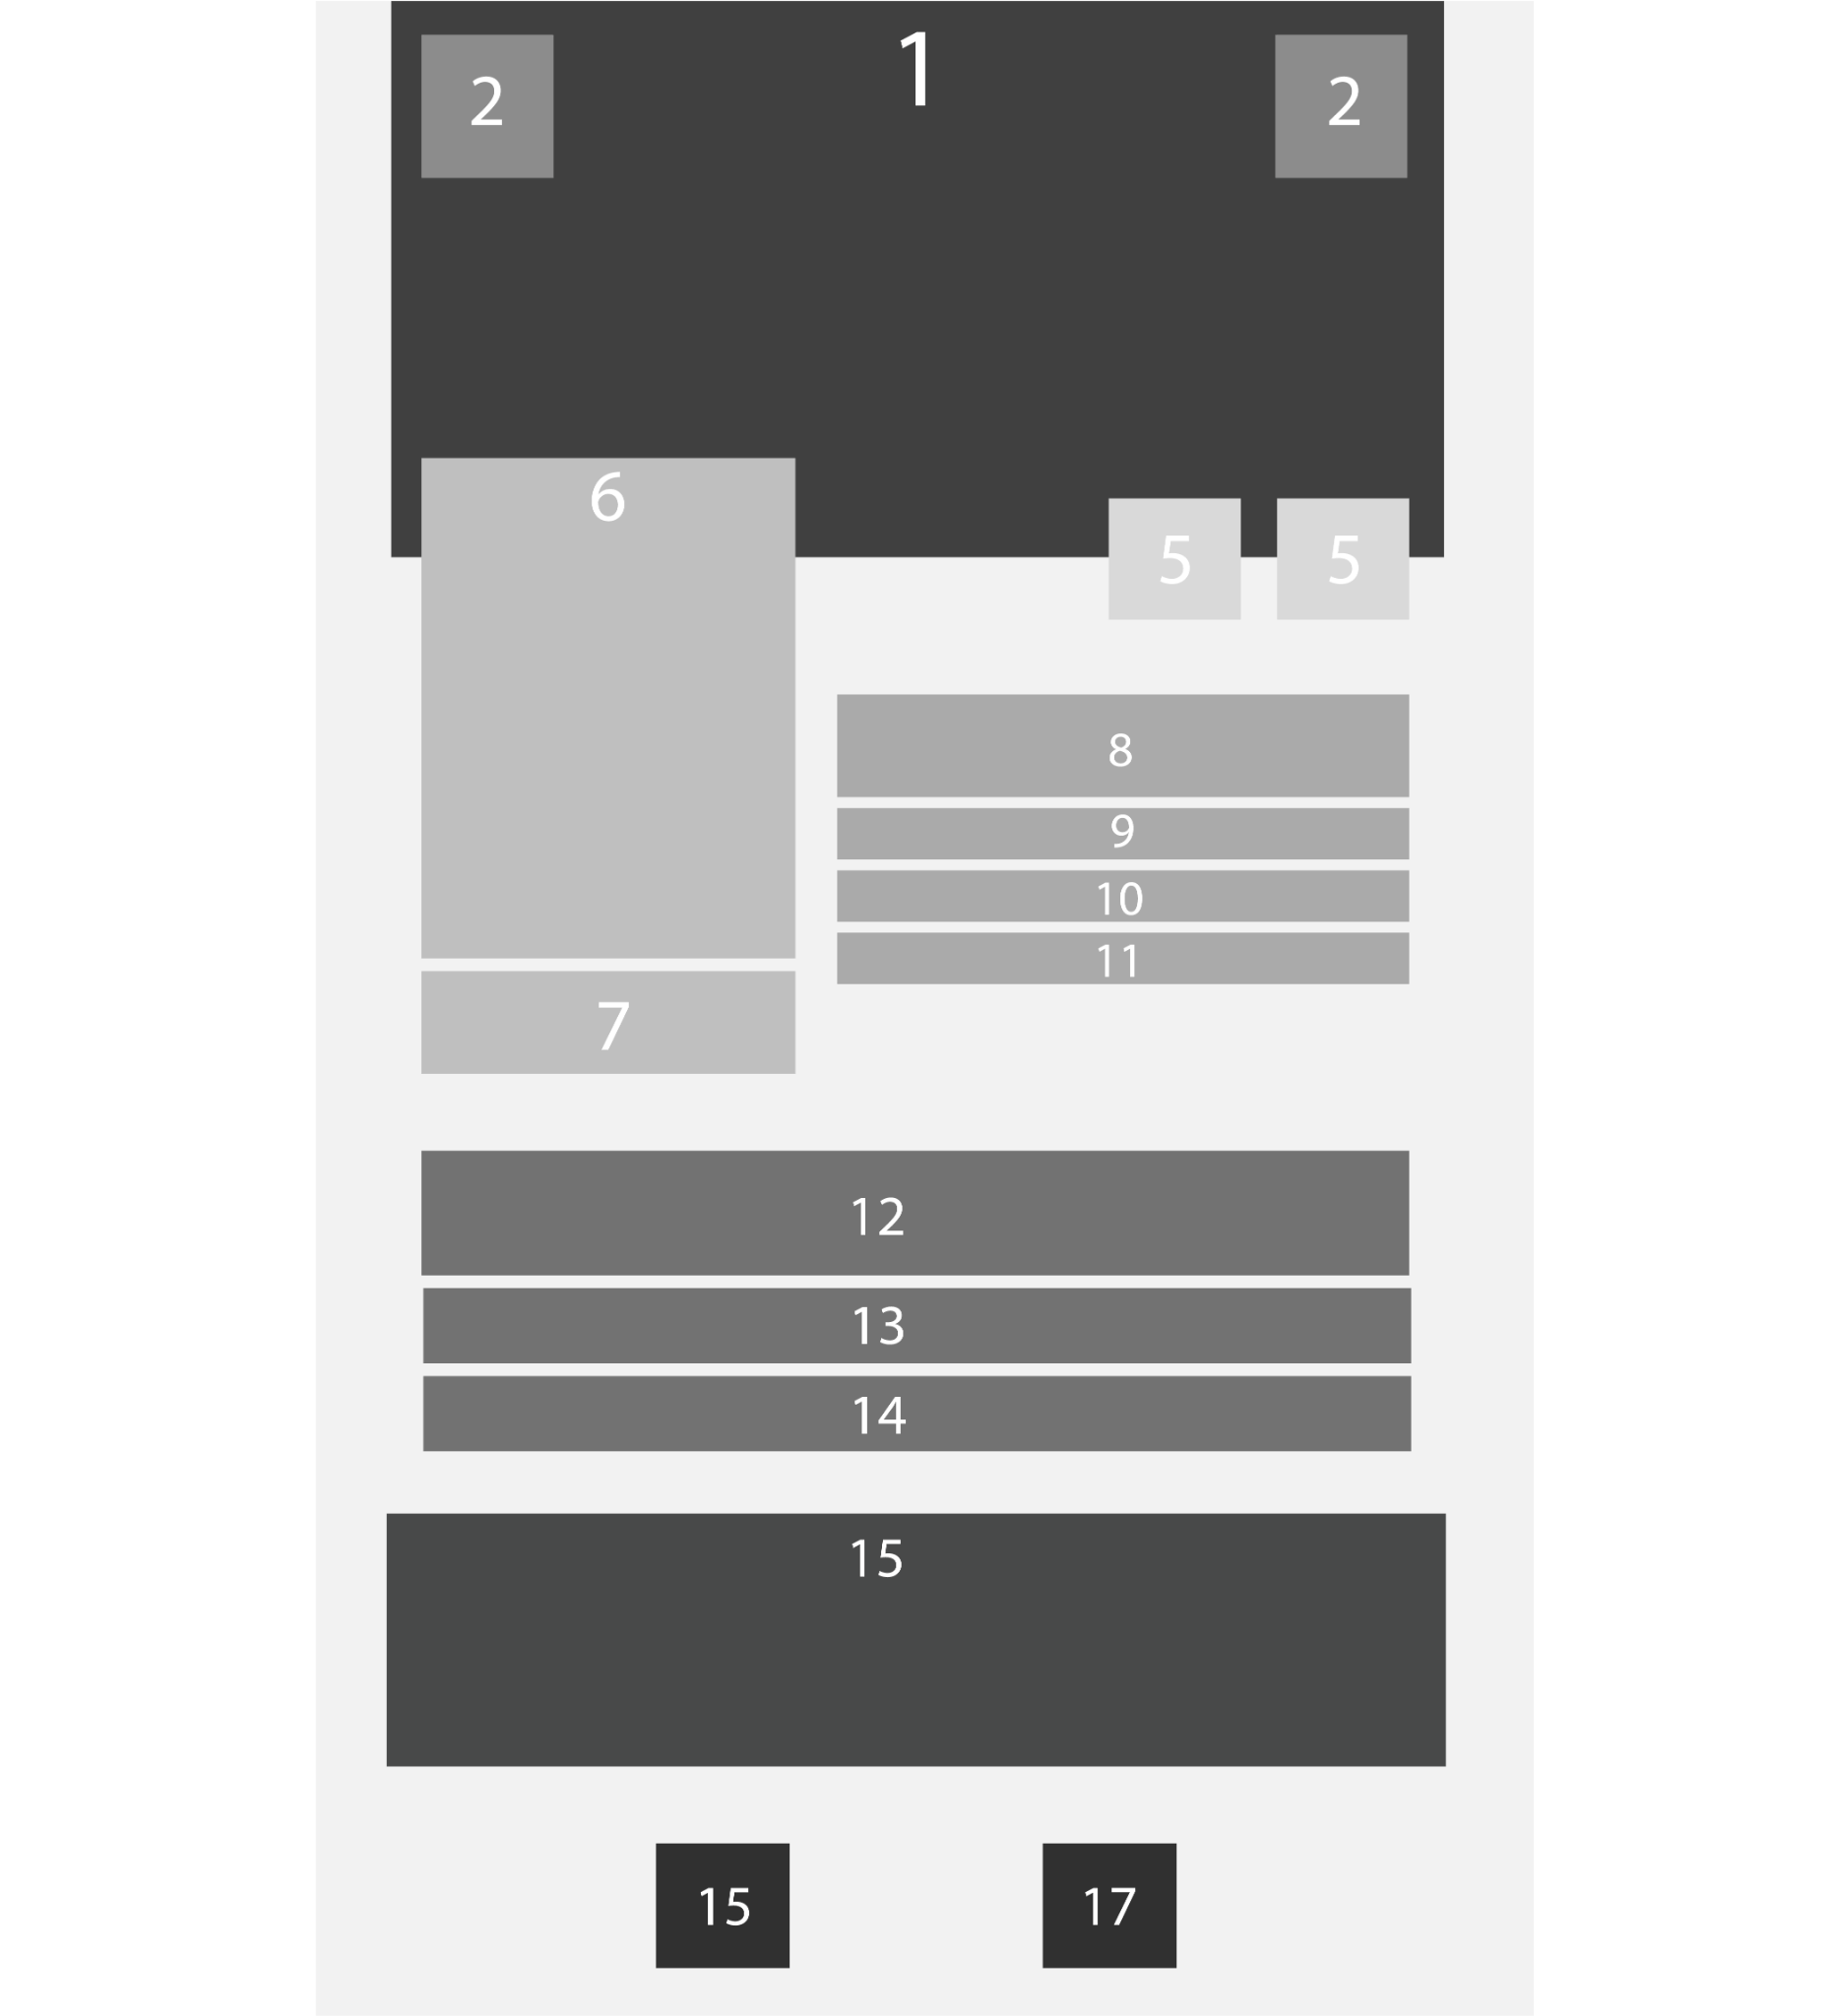 Imagem de uma parte da tela com diversas caixas, numeradas de 1 a 17. Essas caixas simulam os elementos dispostos nos containers  que foram descritos ao longo do artigo para demonstrar que o layout da tela do Beagle Movies neste tutorial pode ser visualizado dessa maneira fragmentada por caixas.